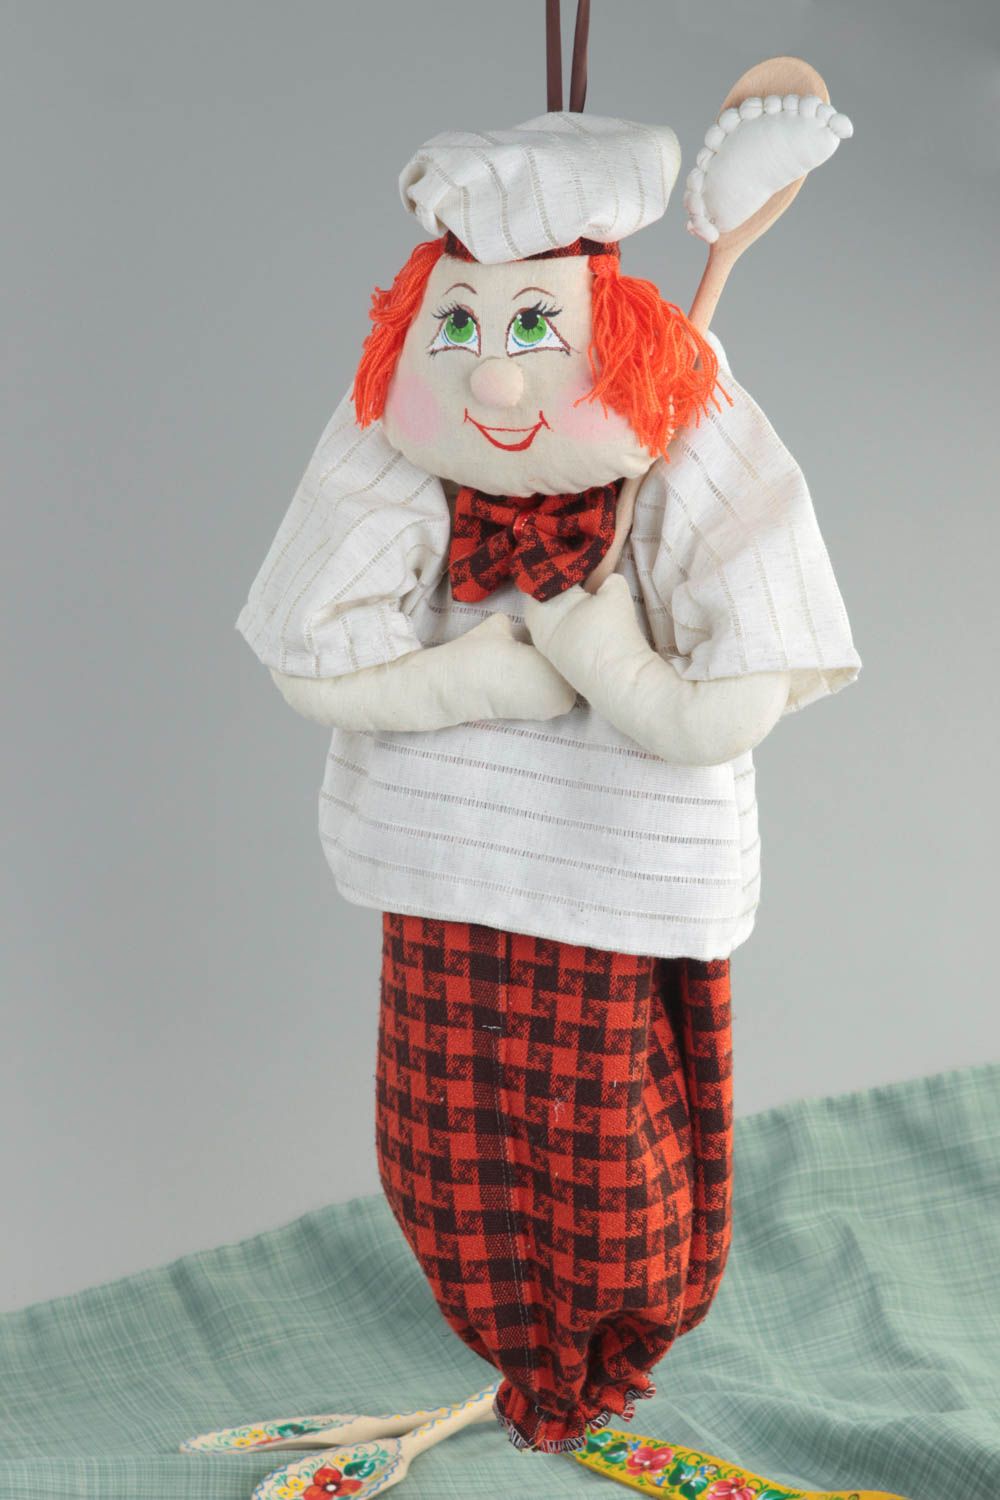 Забавная пакетница из ткани сшитая в виде куклы Повар для декора ручная работа фото 1